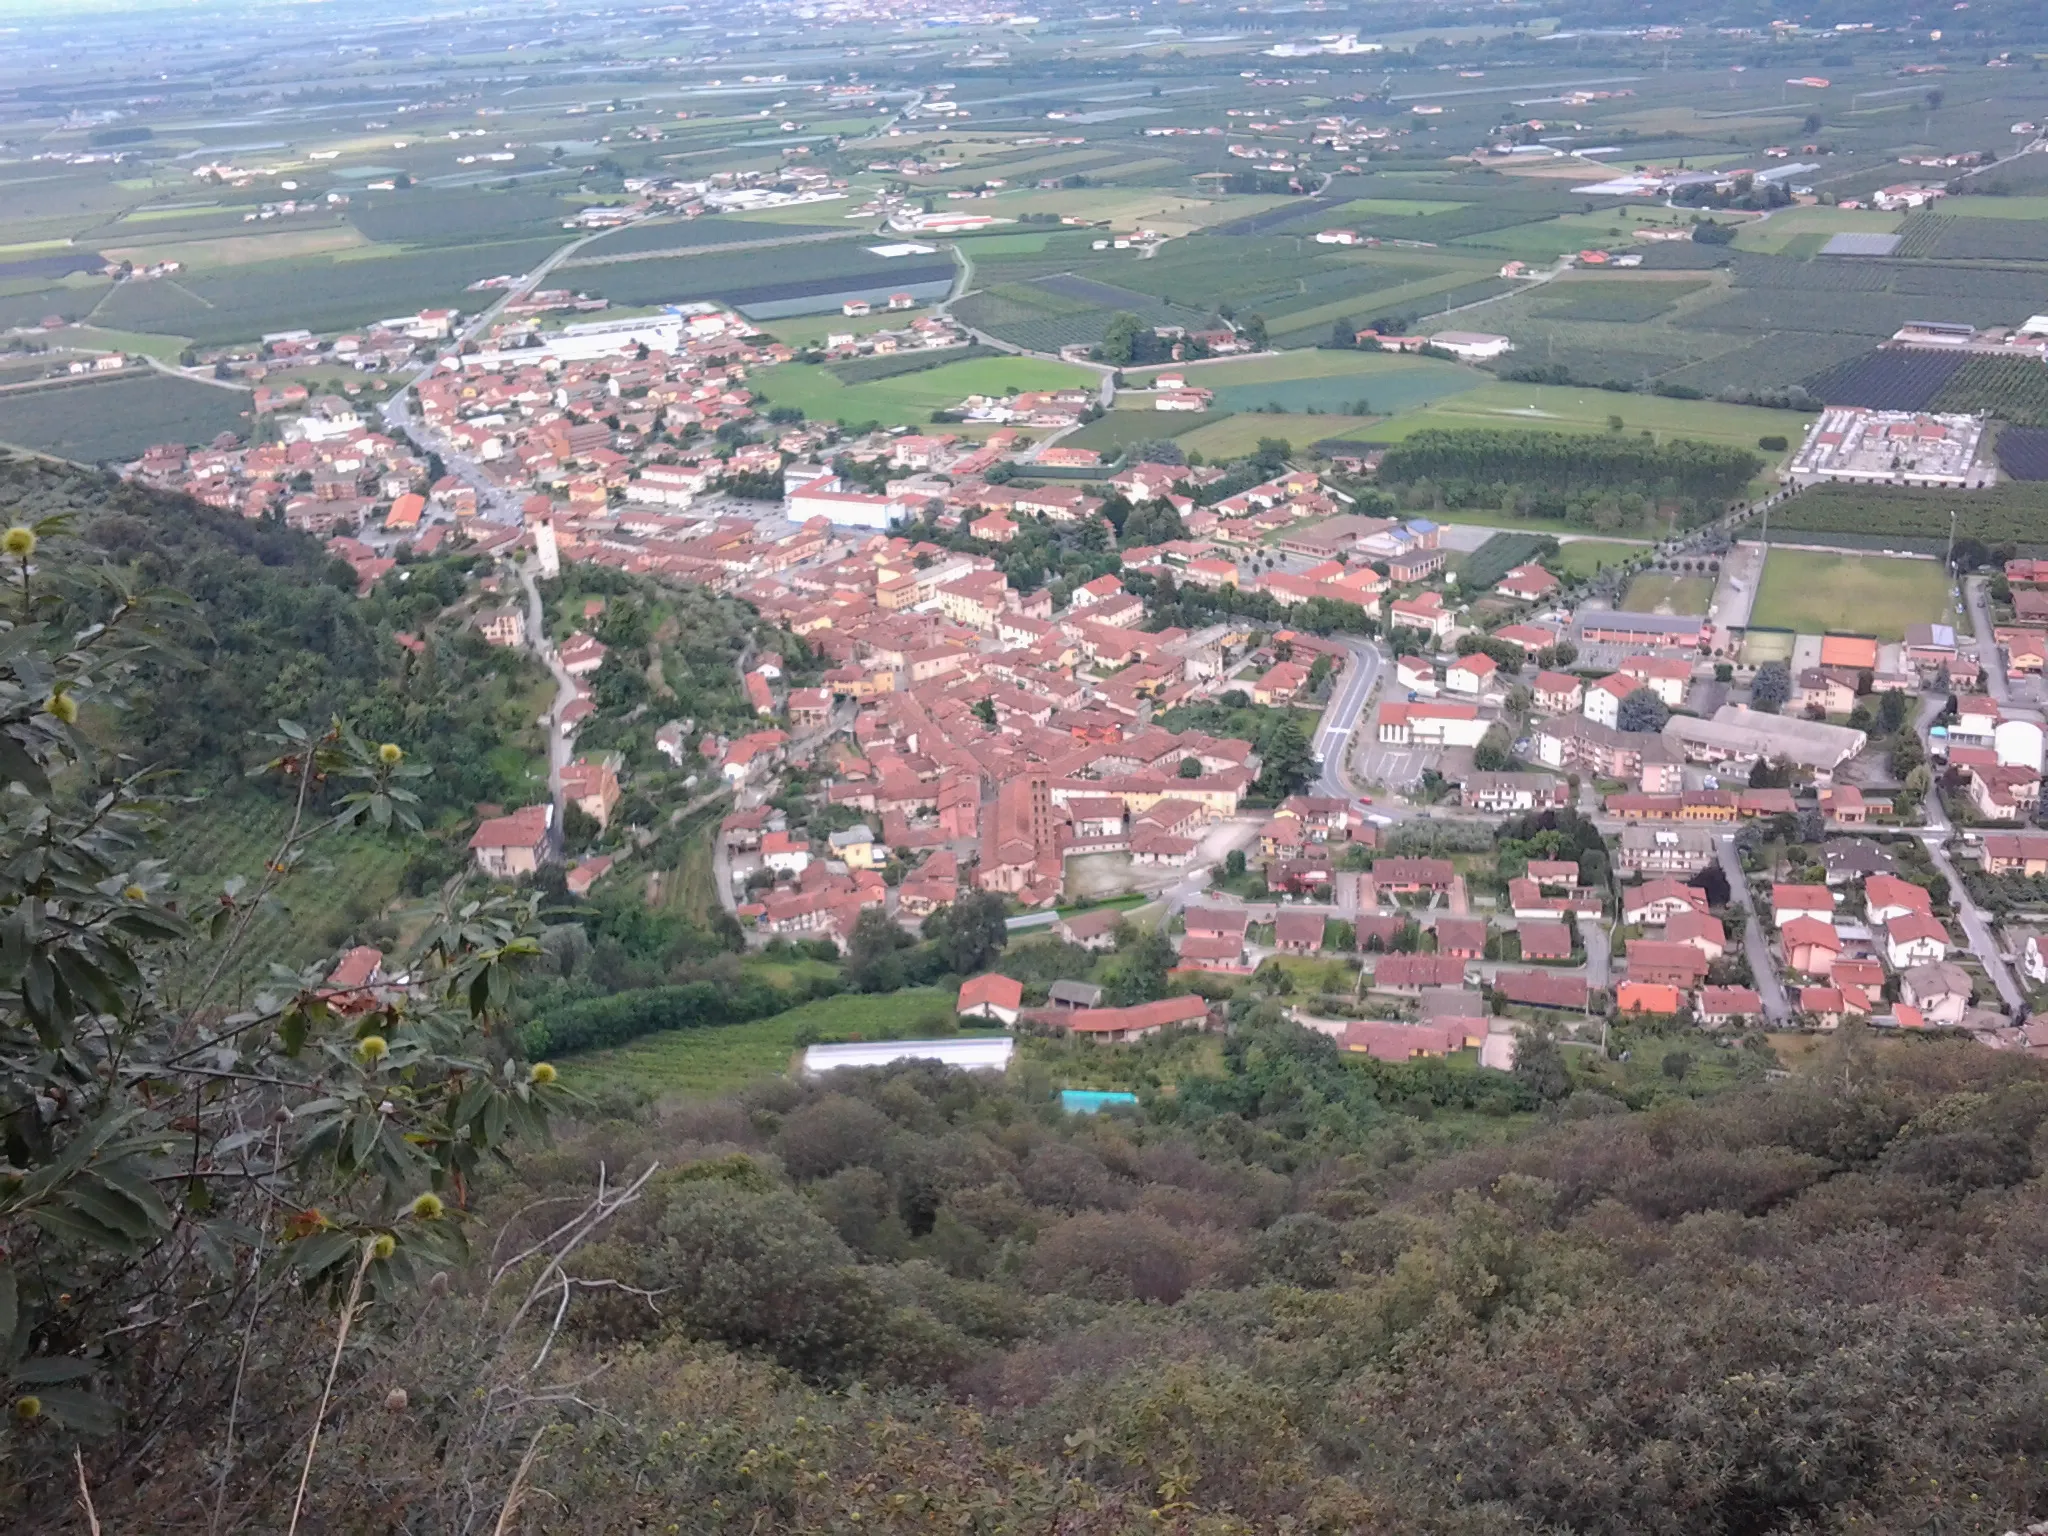 Slika Piemonte